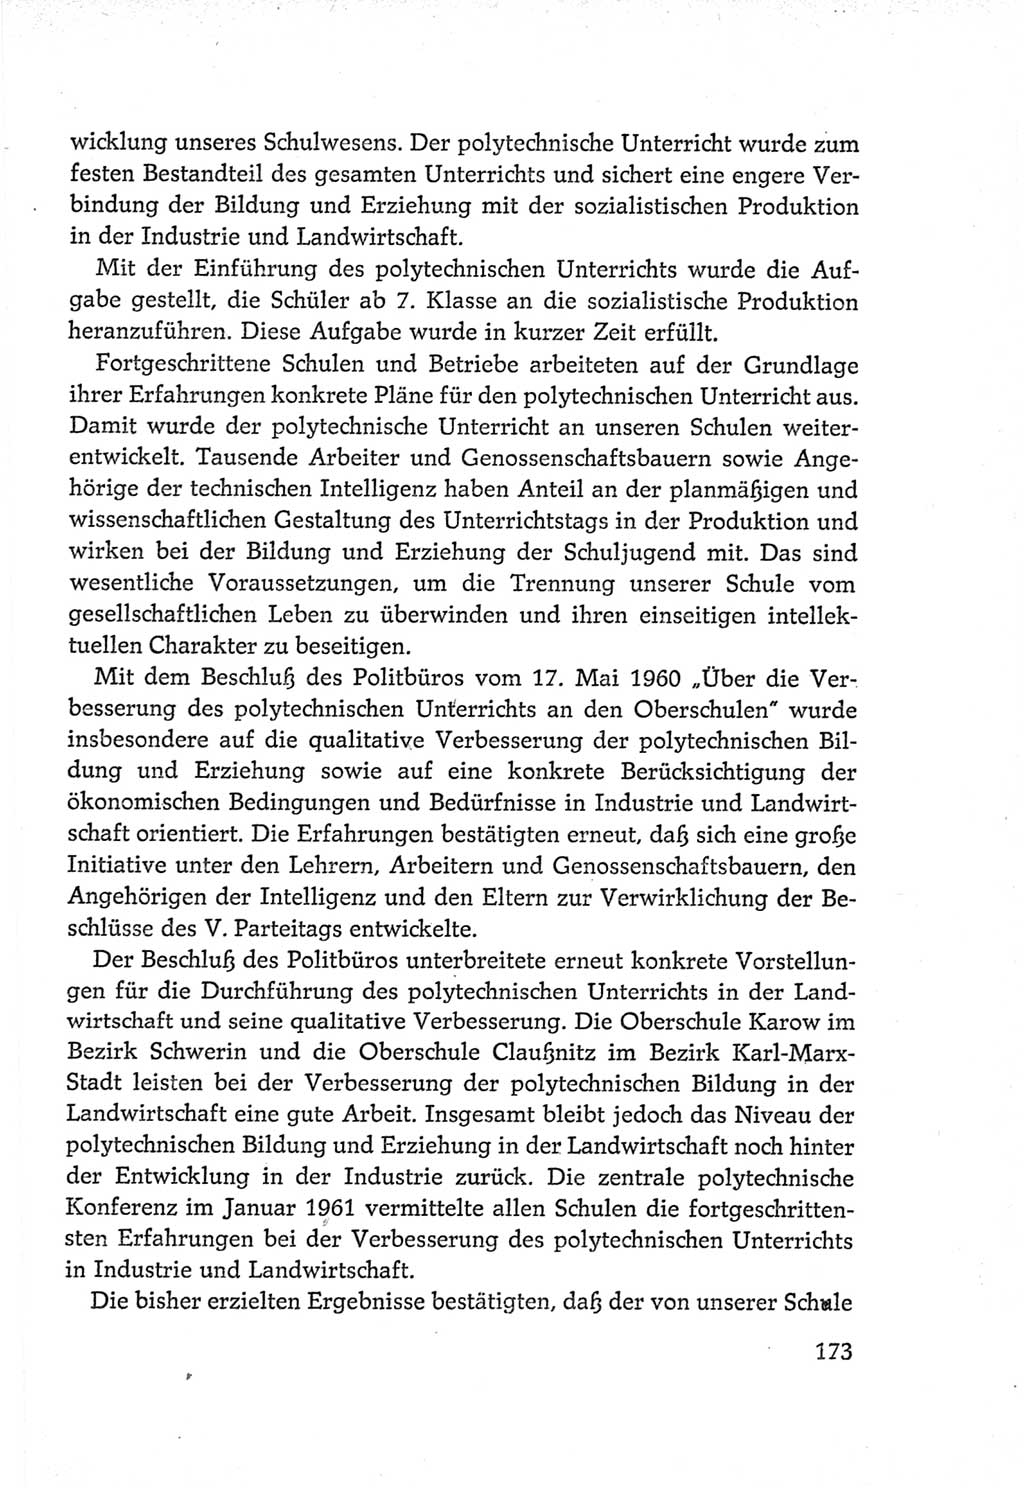 Protokoll der Verhandlungen des Ⅵ. Parteitages der Sozialistischen Einheitspartei Deutschlands (SED) [Deutsche Demokratische Republik (DDR)] 1963, Band Ⅳ, Seite 173 (Prot. Verh. Ⅵ. PT SED DDR 1963, Bd. Ⅳ, S. 173)